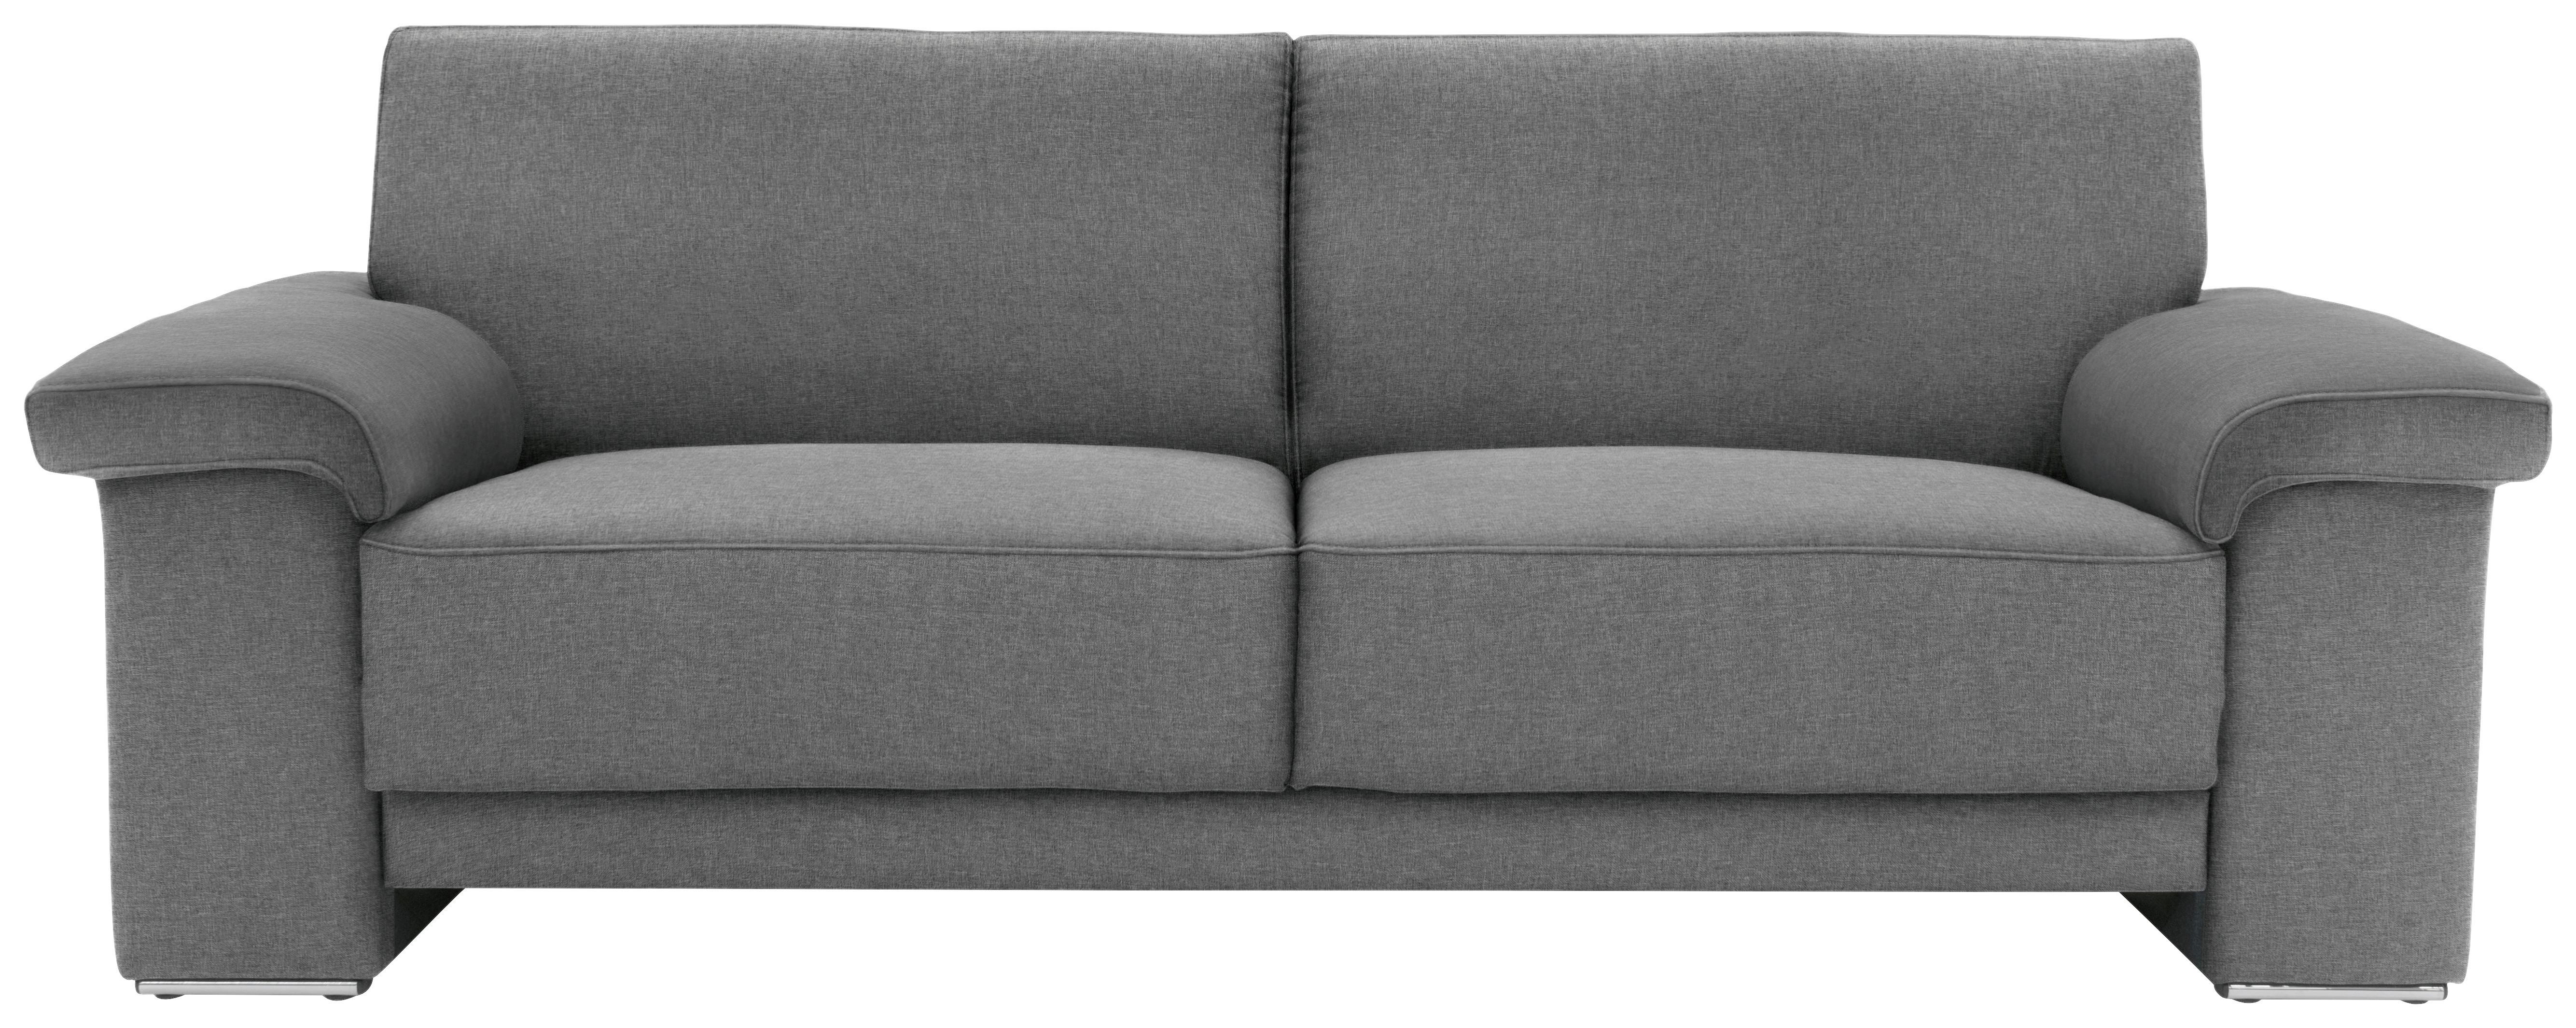 3-Sitzer-Sofa Arizona Armlehnen Silberfarben - Chromfarben/Silberfarben, KONVENTIONELL, Textil (214/84/91cm)